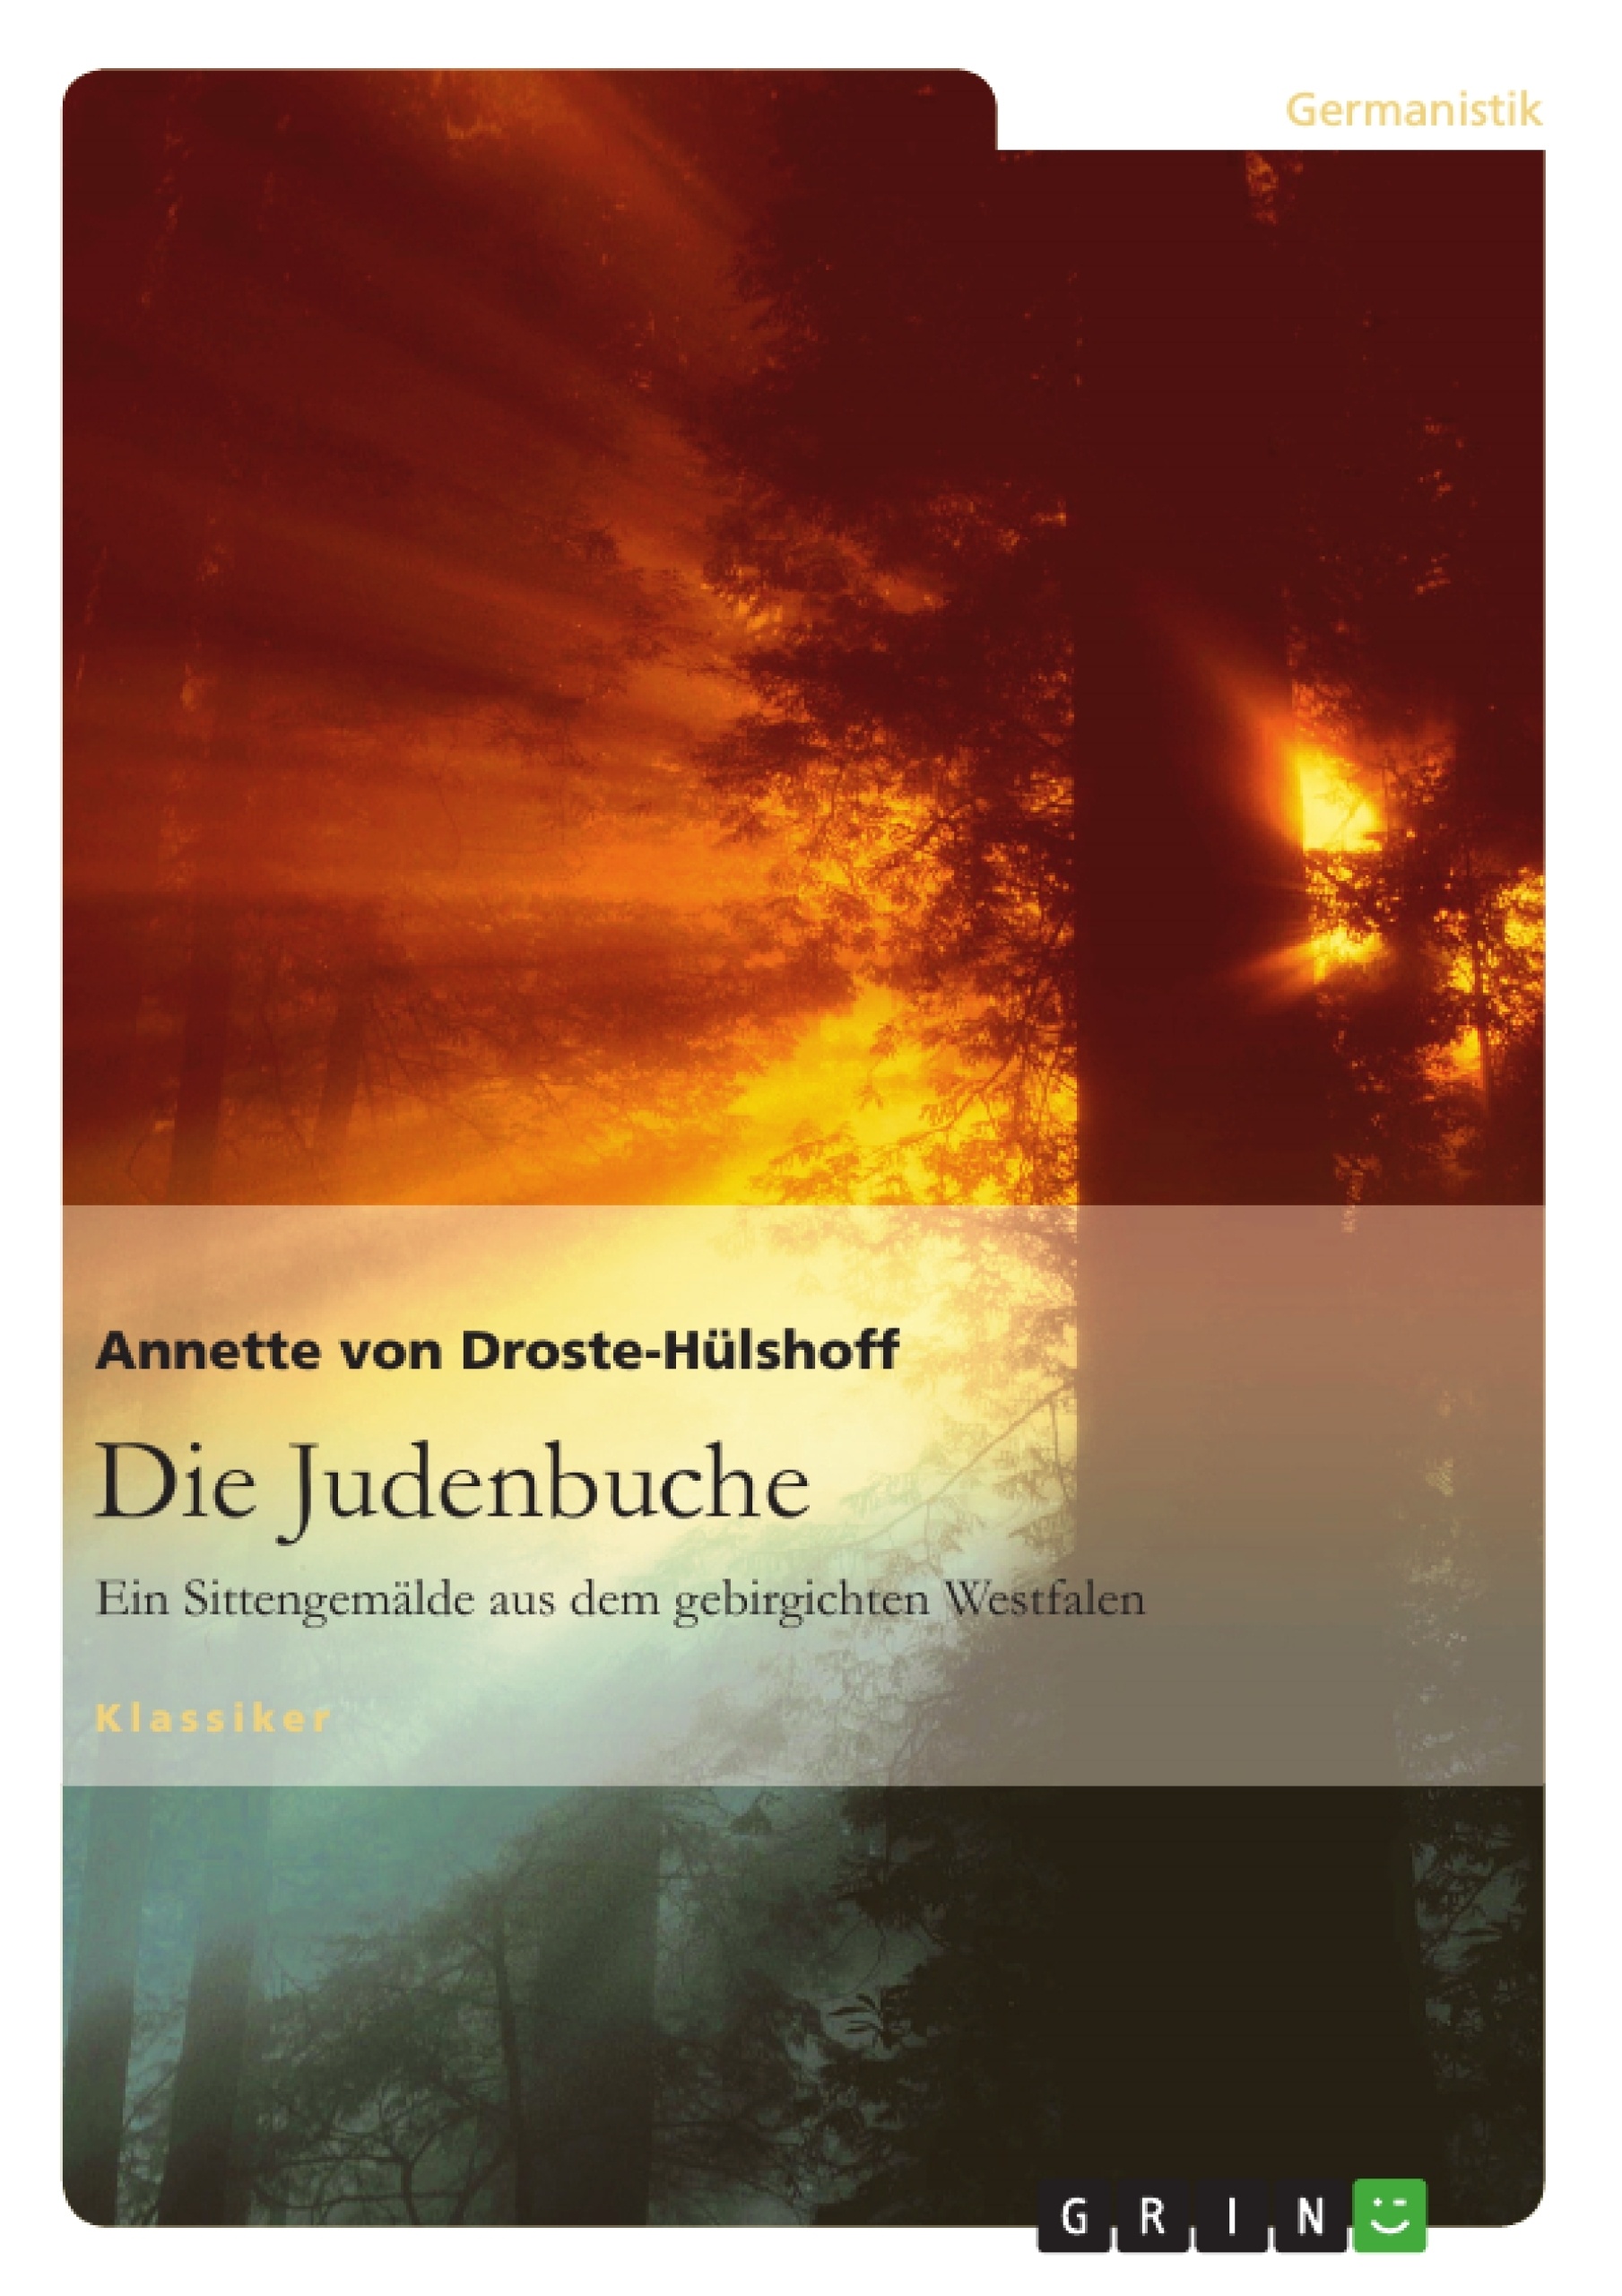 Title: Die Judenbuche